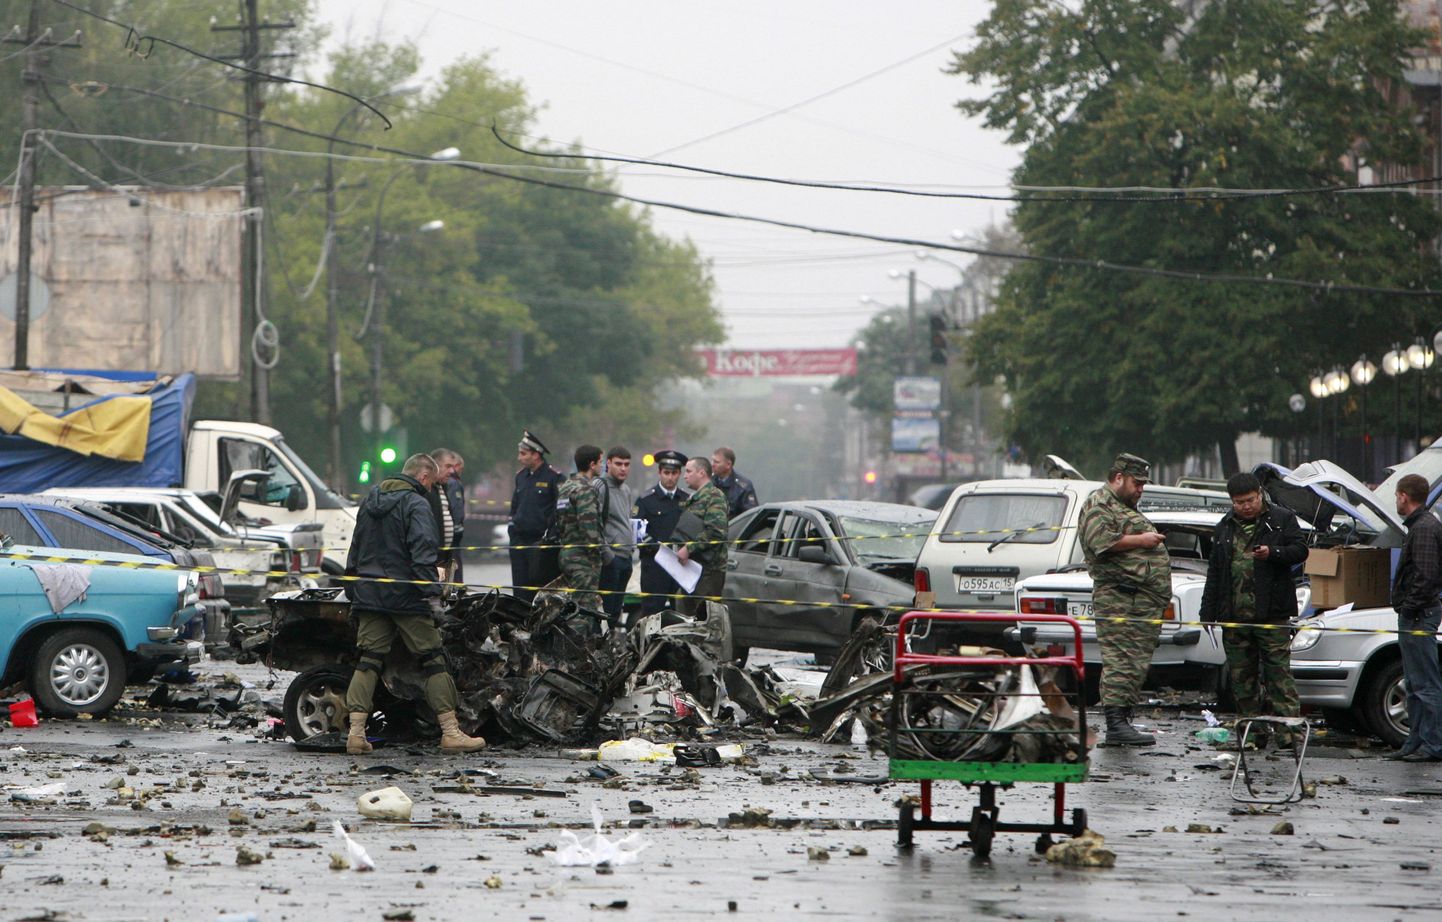 Vladikavkazis 2010. aasta septembris toimunud enesetapurünnak.